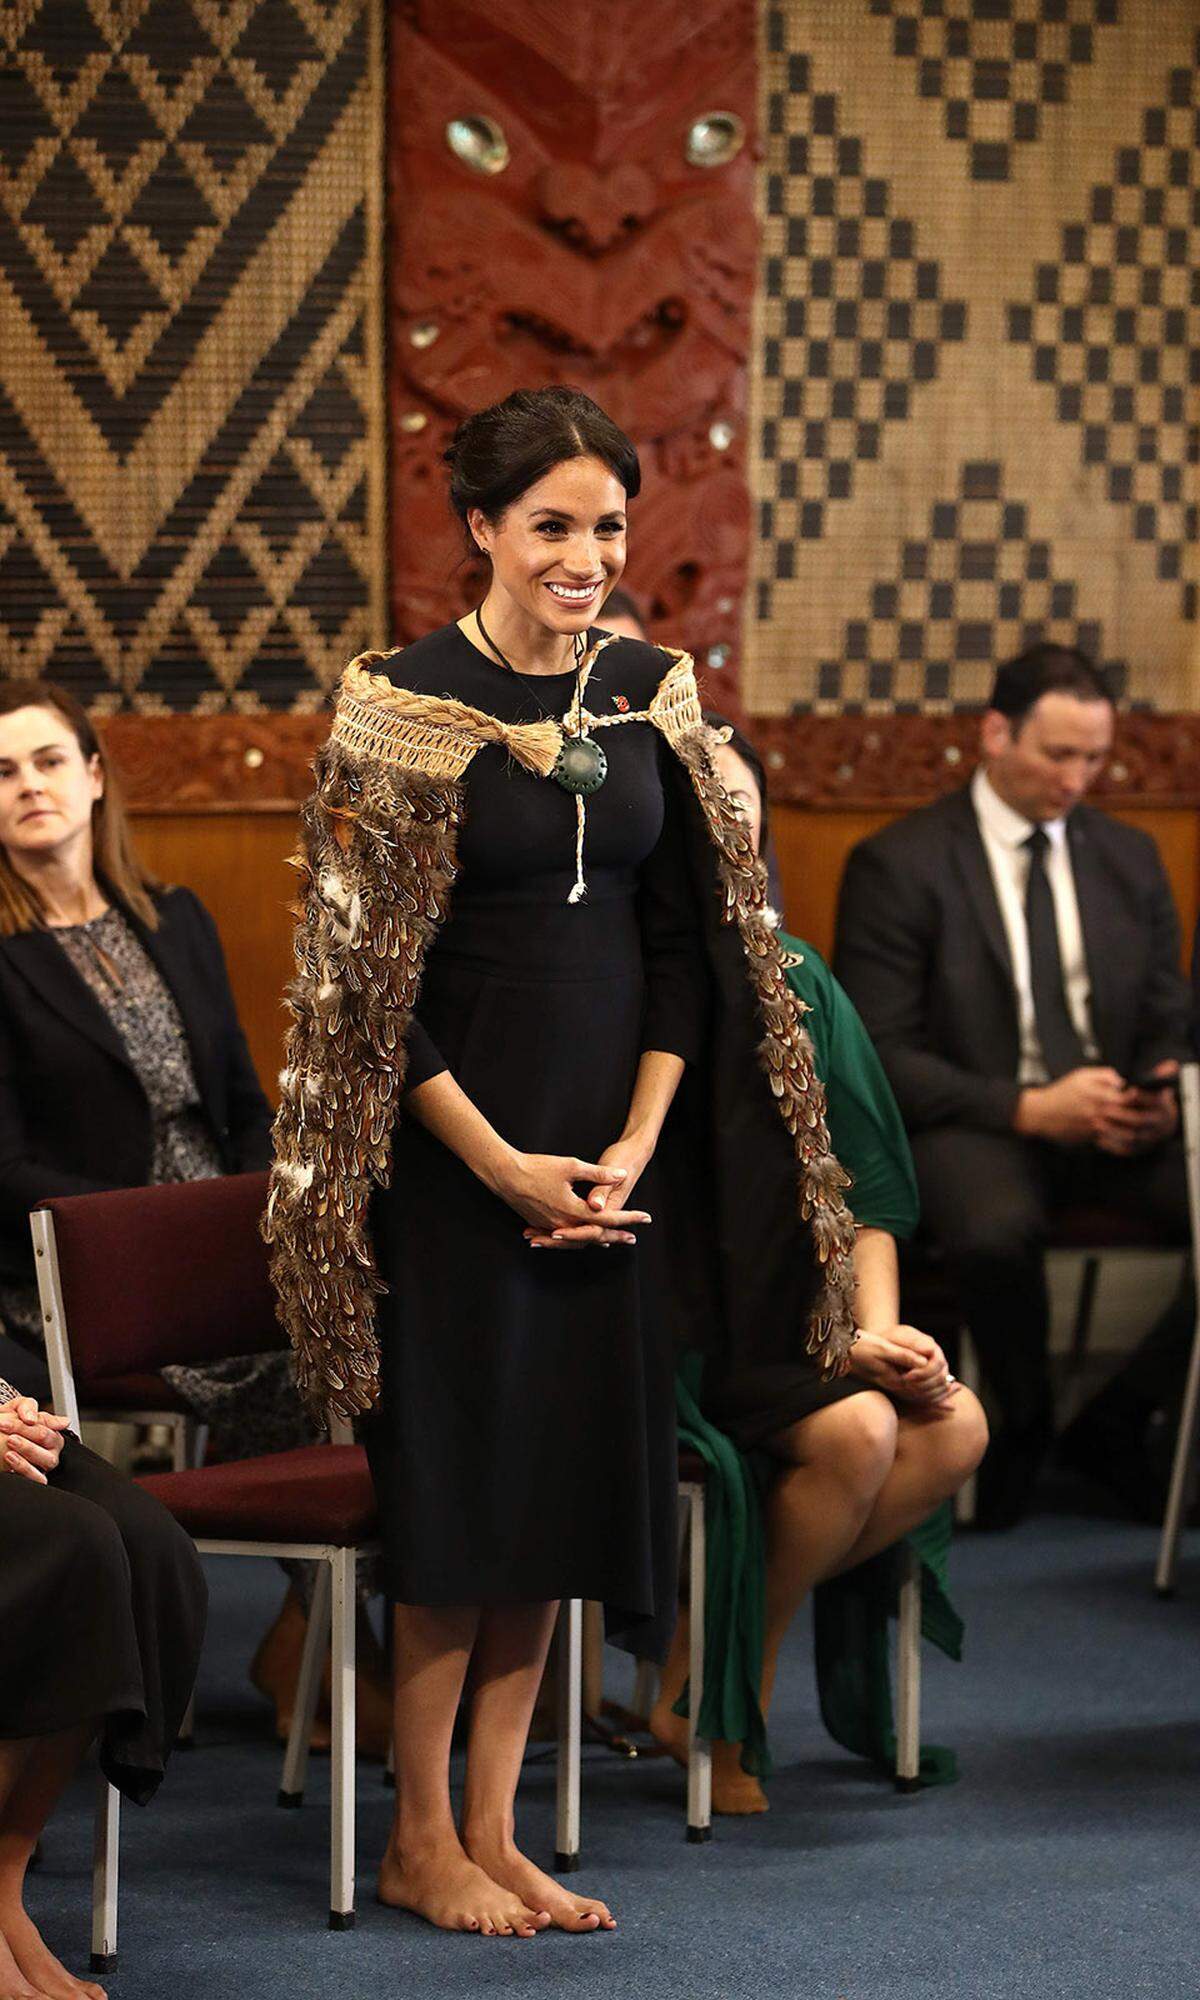 Schuhe aus, auch für Royals: Die Te Papaiouru Marae, eine Zeremonienstätte der Maori in Rotorua, wird schuhlos betreten. Nach einer Rede von Prinz Harry und einem traditionellen Mittagessen, ging es weiter zum nächsten Zwischenstopp.